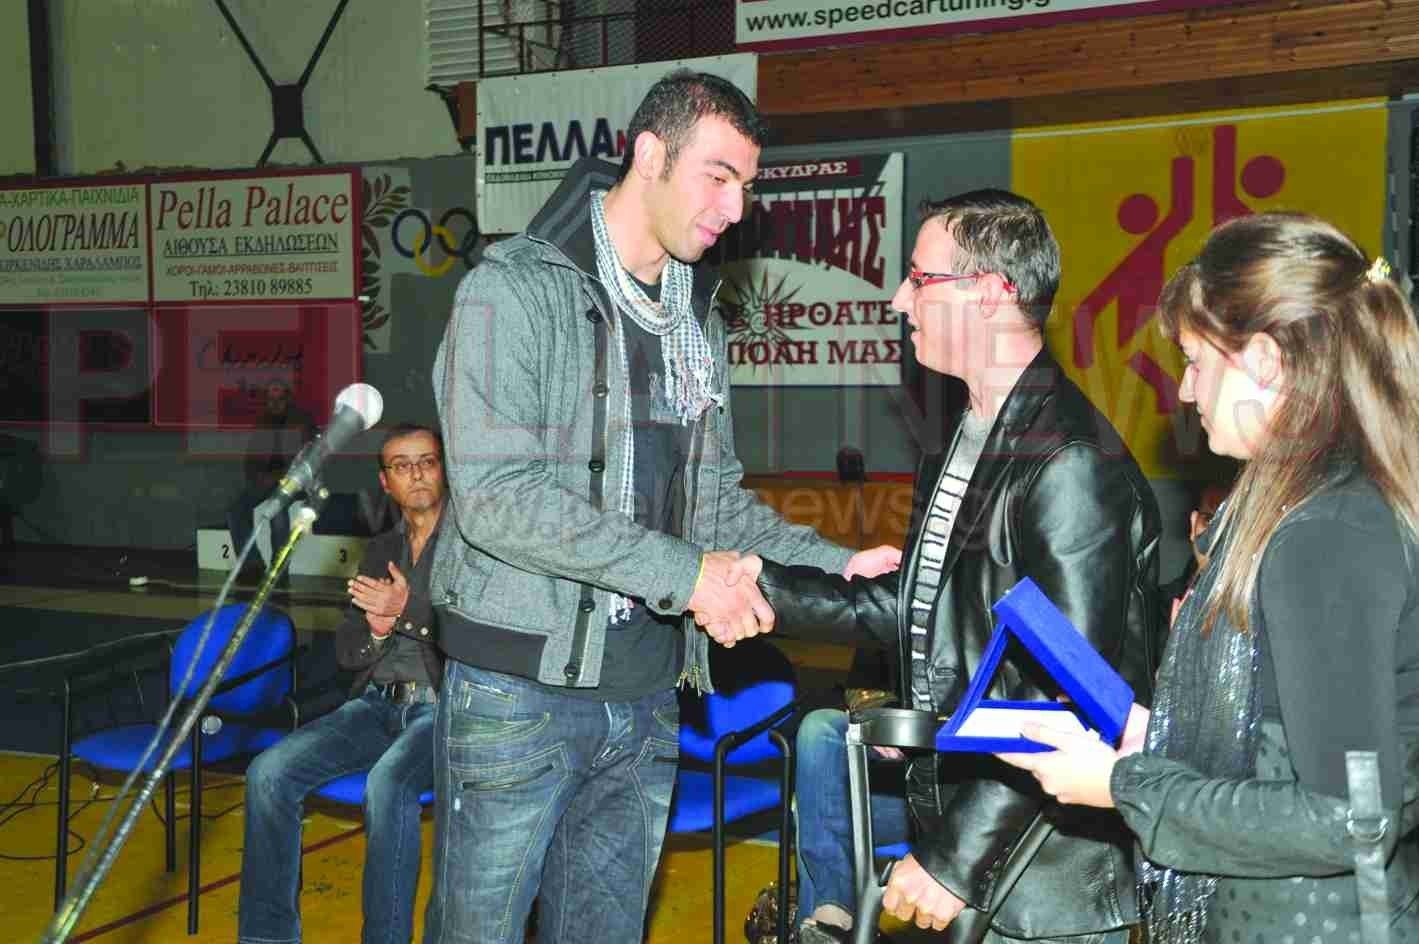 Καλό ταξίδι Ολυμπιονίκη Αλέξανδρε Νικολαΐδη-η βράβευση του το 2008 από την Πέλλαnews στο γήπεδο που φέρει το όνομα του!